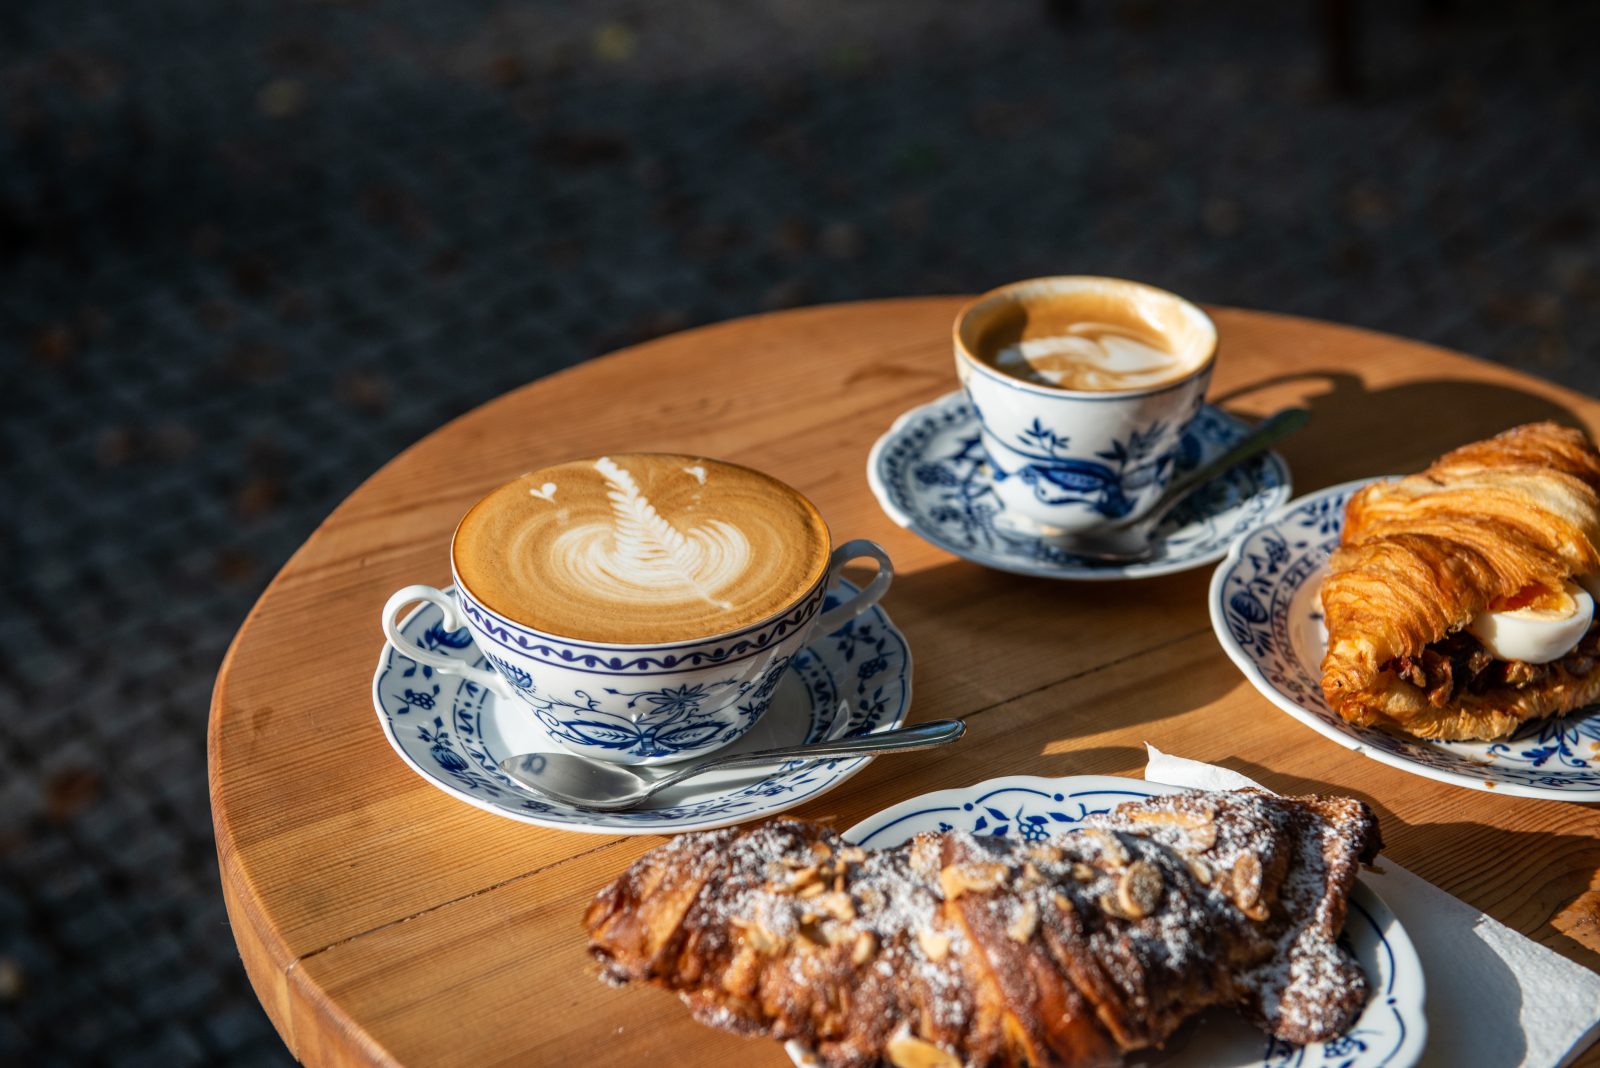 frühstücken in Berlin Das Café La Maison ist eine kulinarische Oase: Egal, ob man es morgens lieber süß oder herzhaft mag – im gemütlichen Café am Kanal kommen alle auf ihre Kosten...